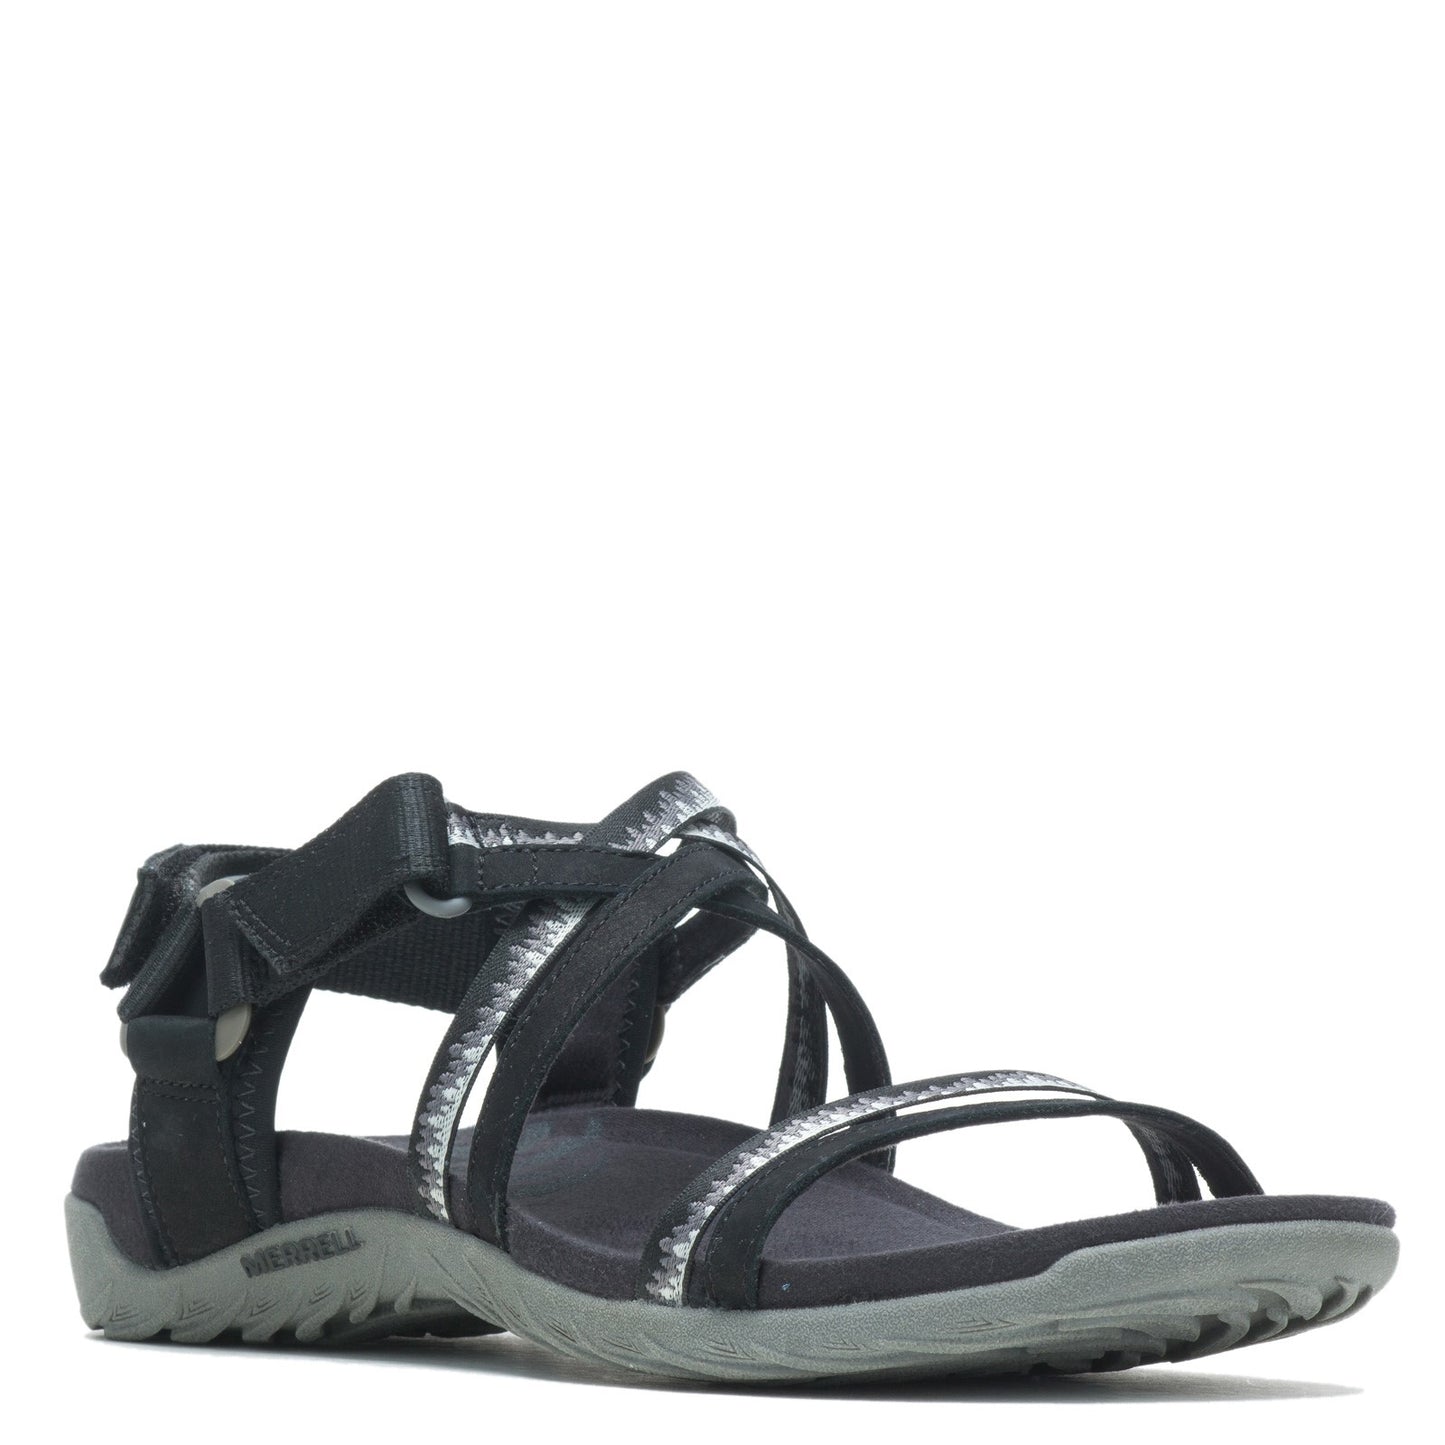 Peltz Shoes  Women's Merrell Terran Cush 3 Lattice Sandal - Wide Width BLACK J002712W